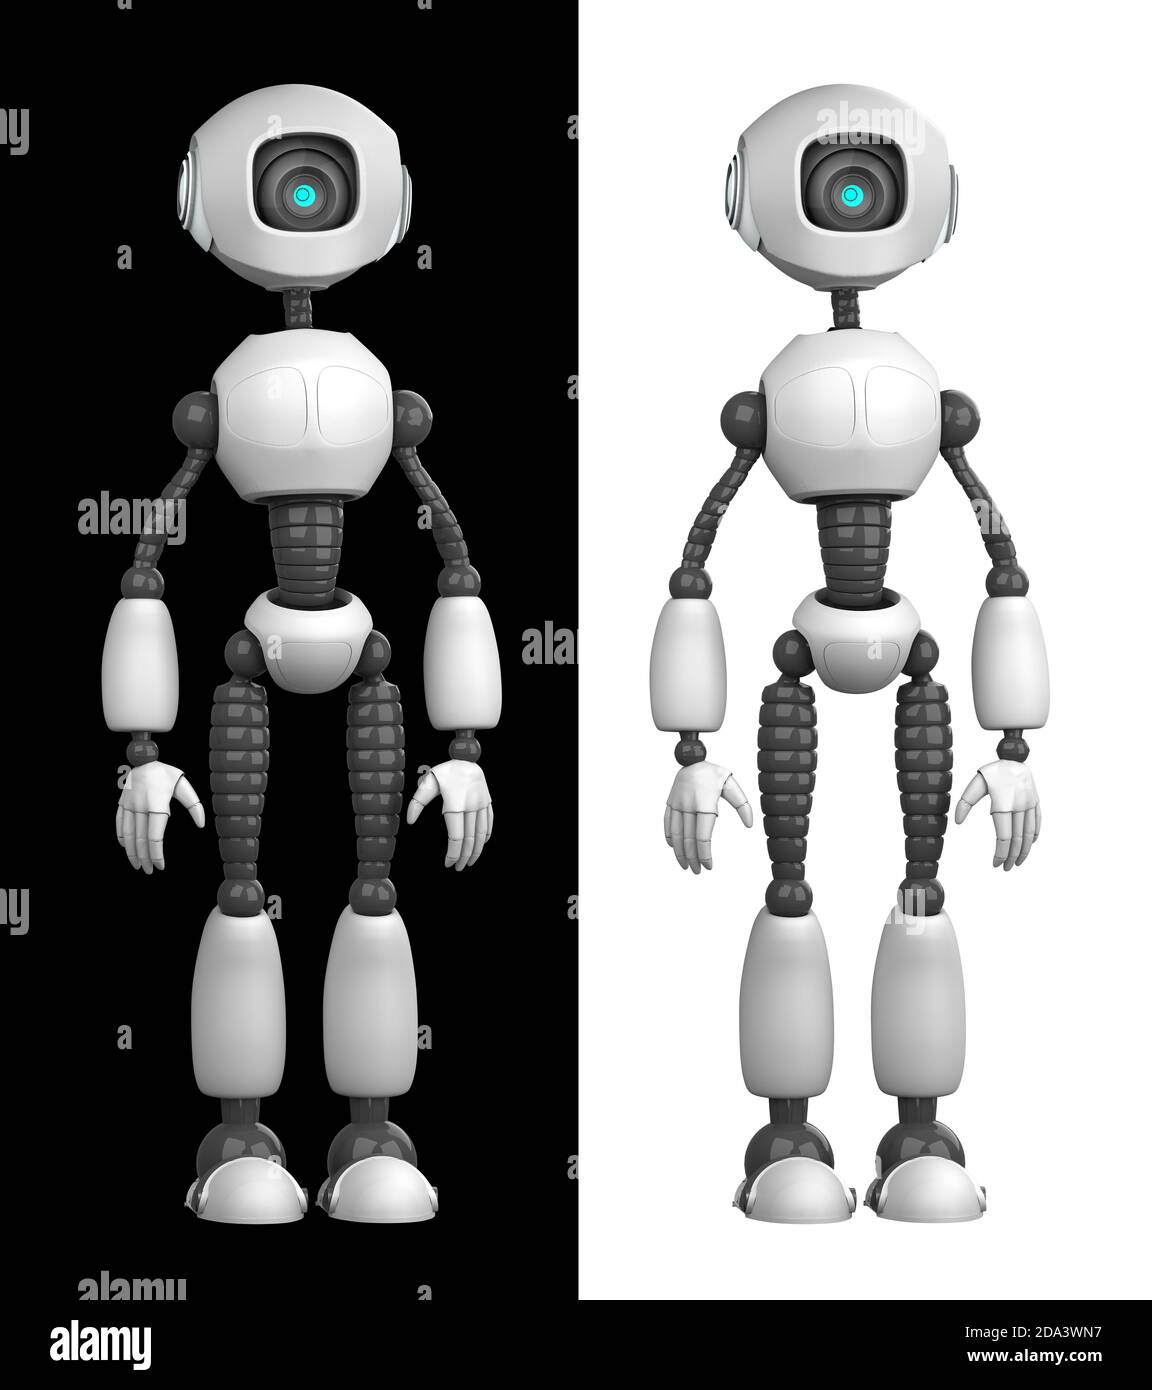 Un robot humanoide aislado sobre fondo blanco y negro. Concepto futuro con robótica e inteligencia artificial. Renderizado en 3D Foto de stock